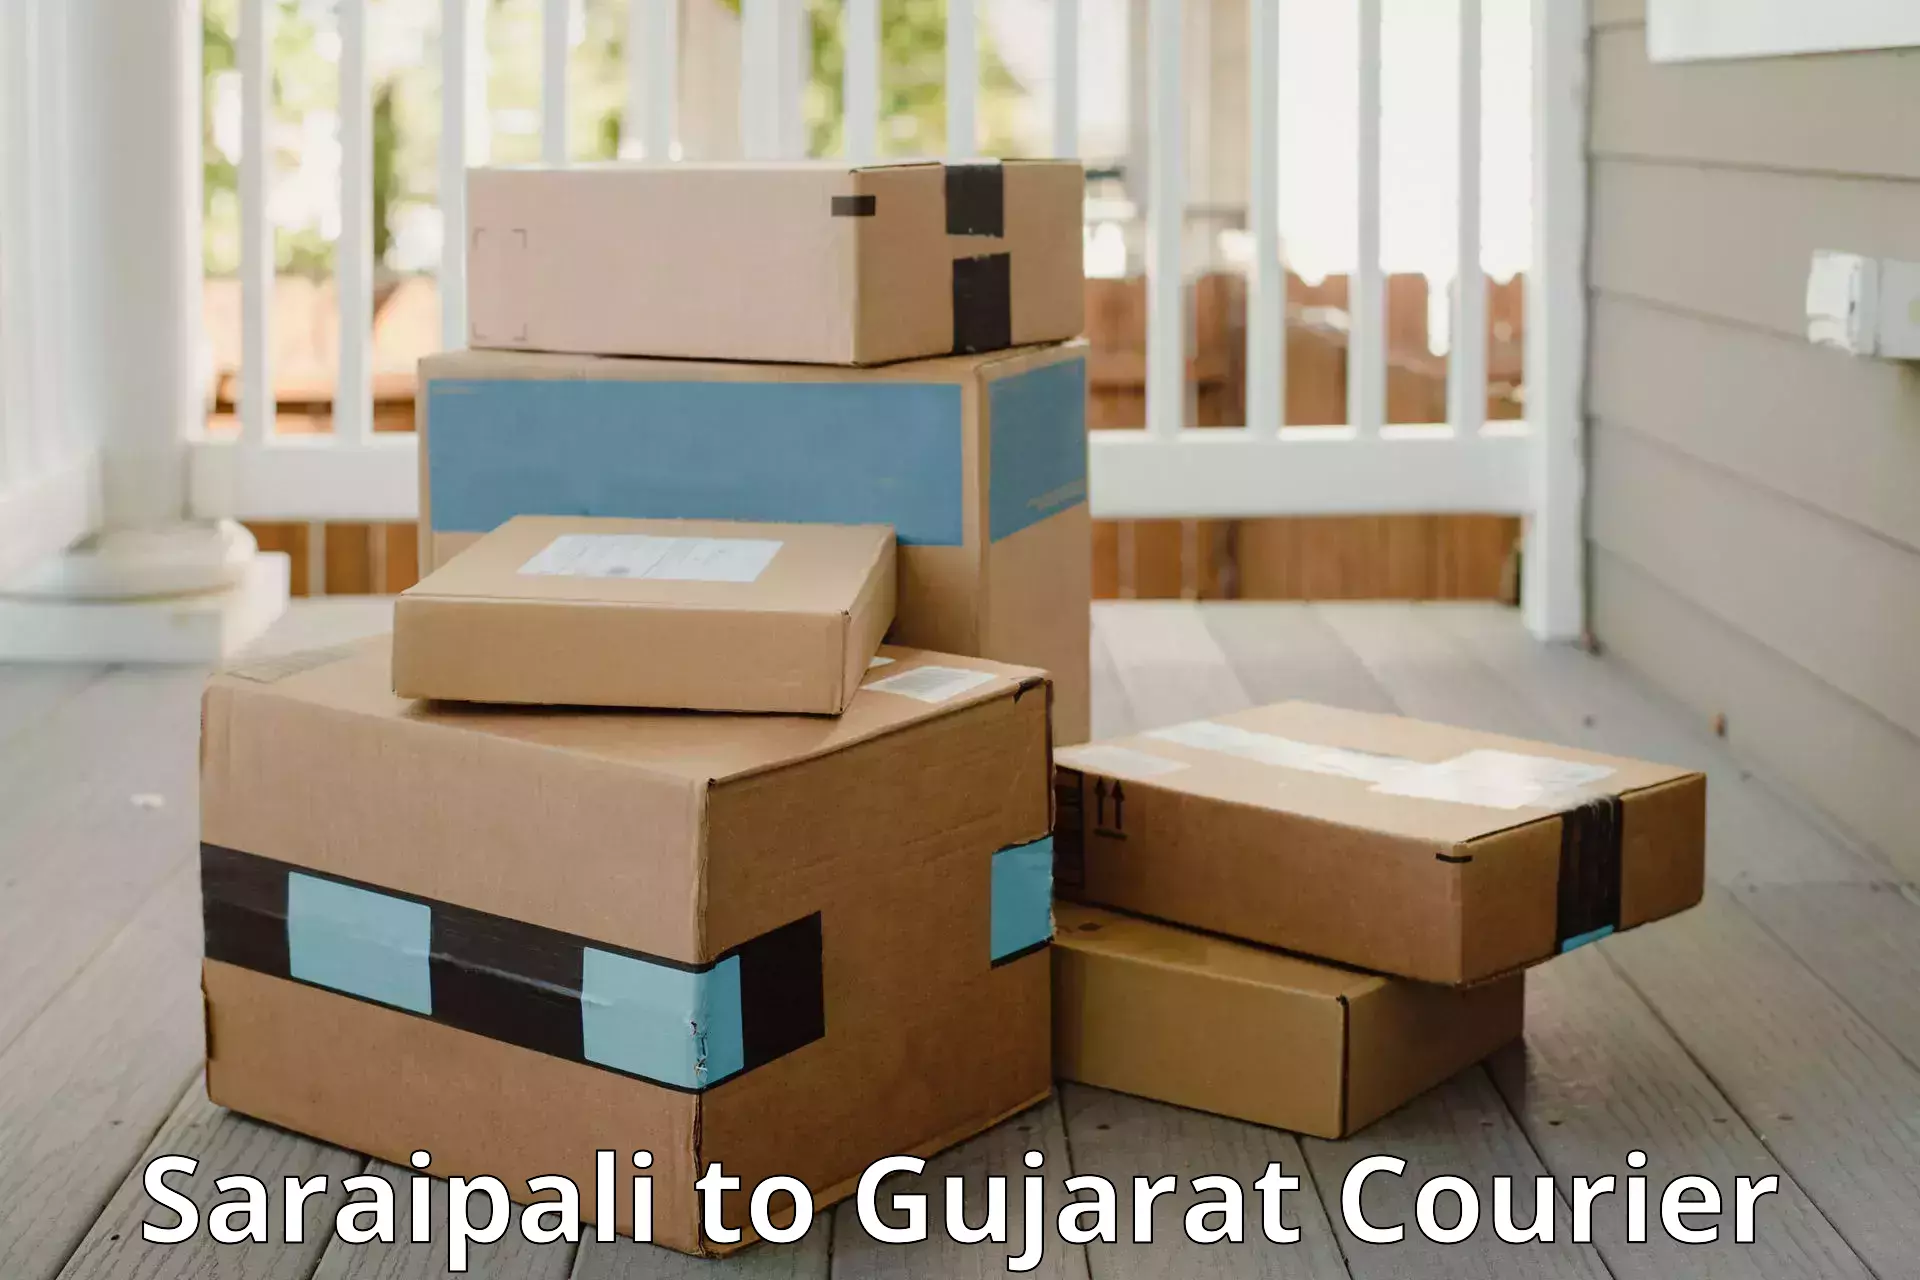 Baggage transport management Saraipali to Gujarat